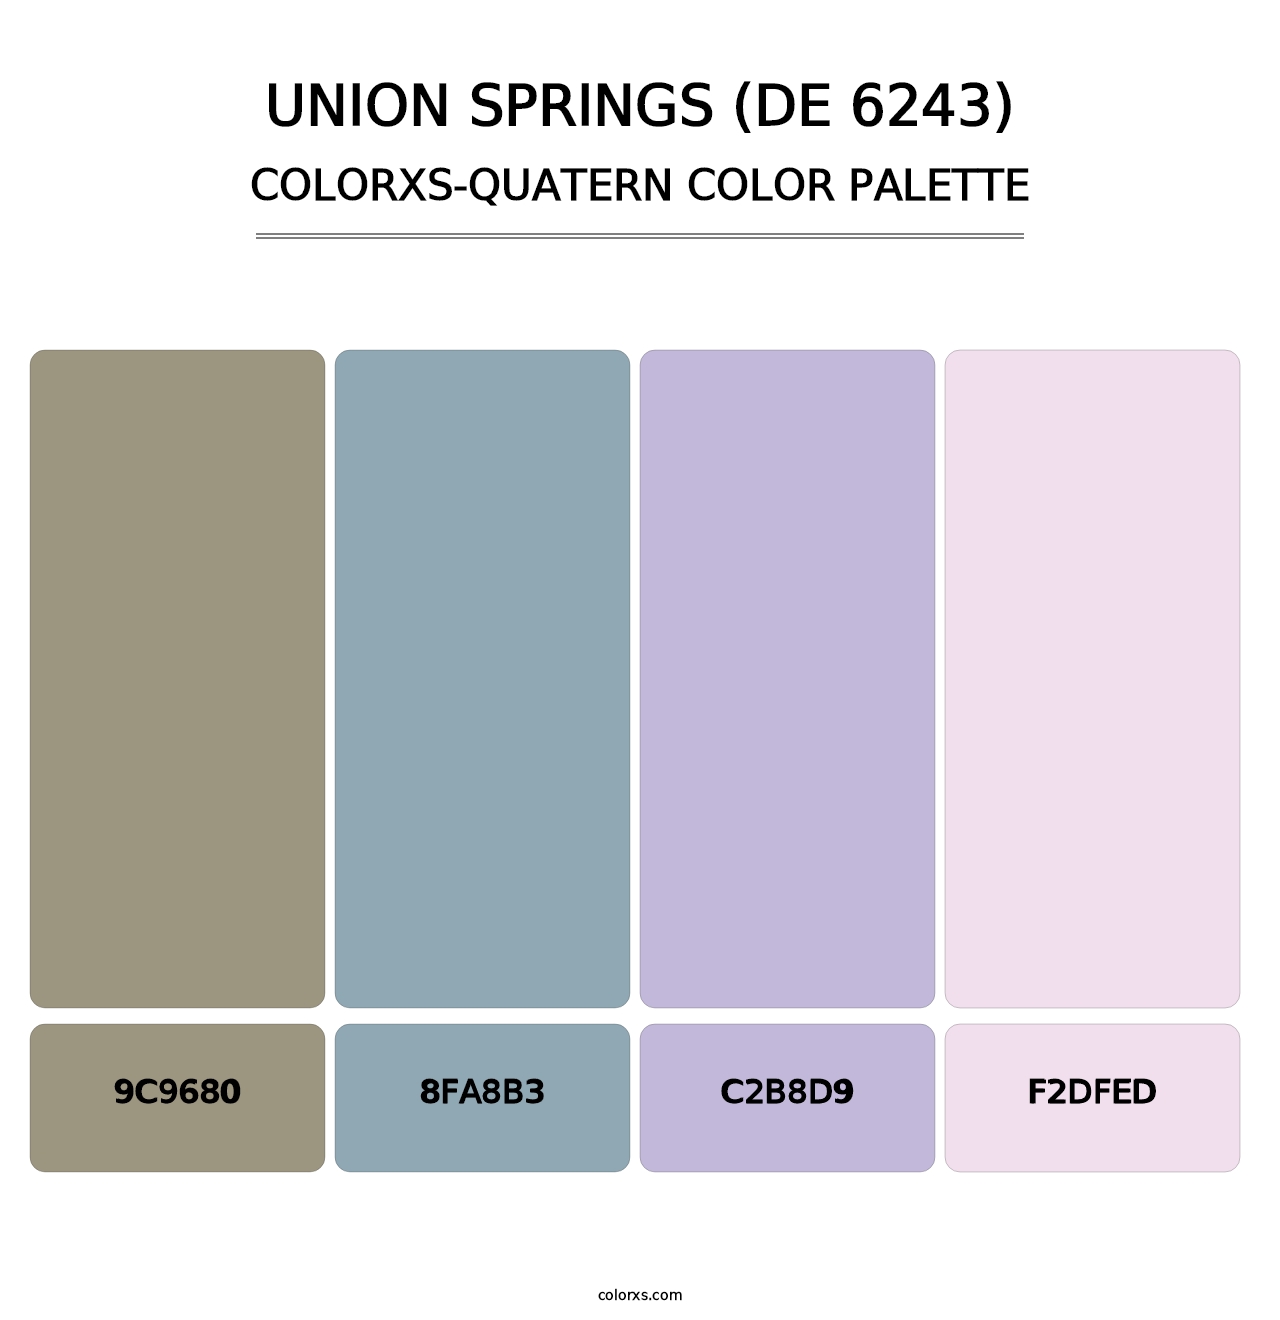 Union Springs (DE 6243) - Colorxs Quatern Palette